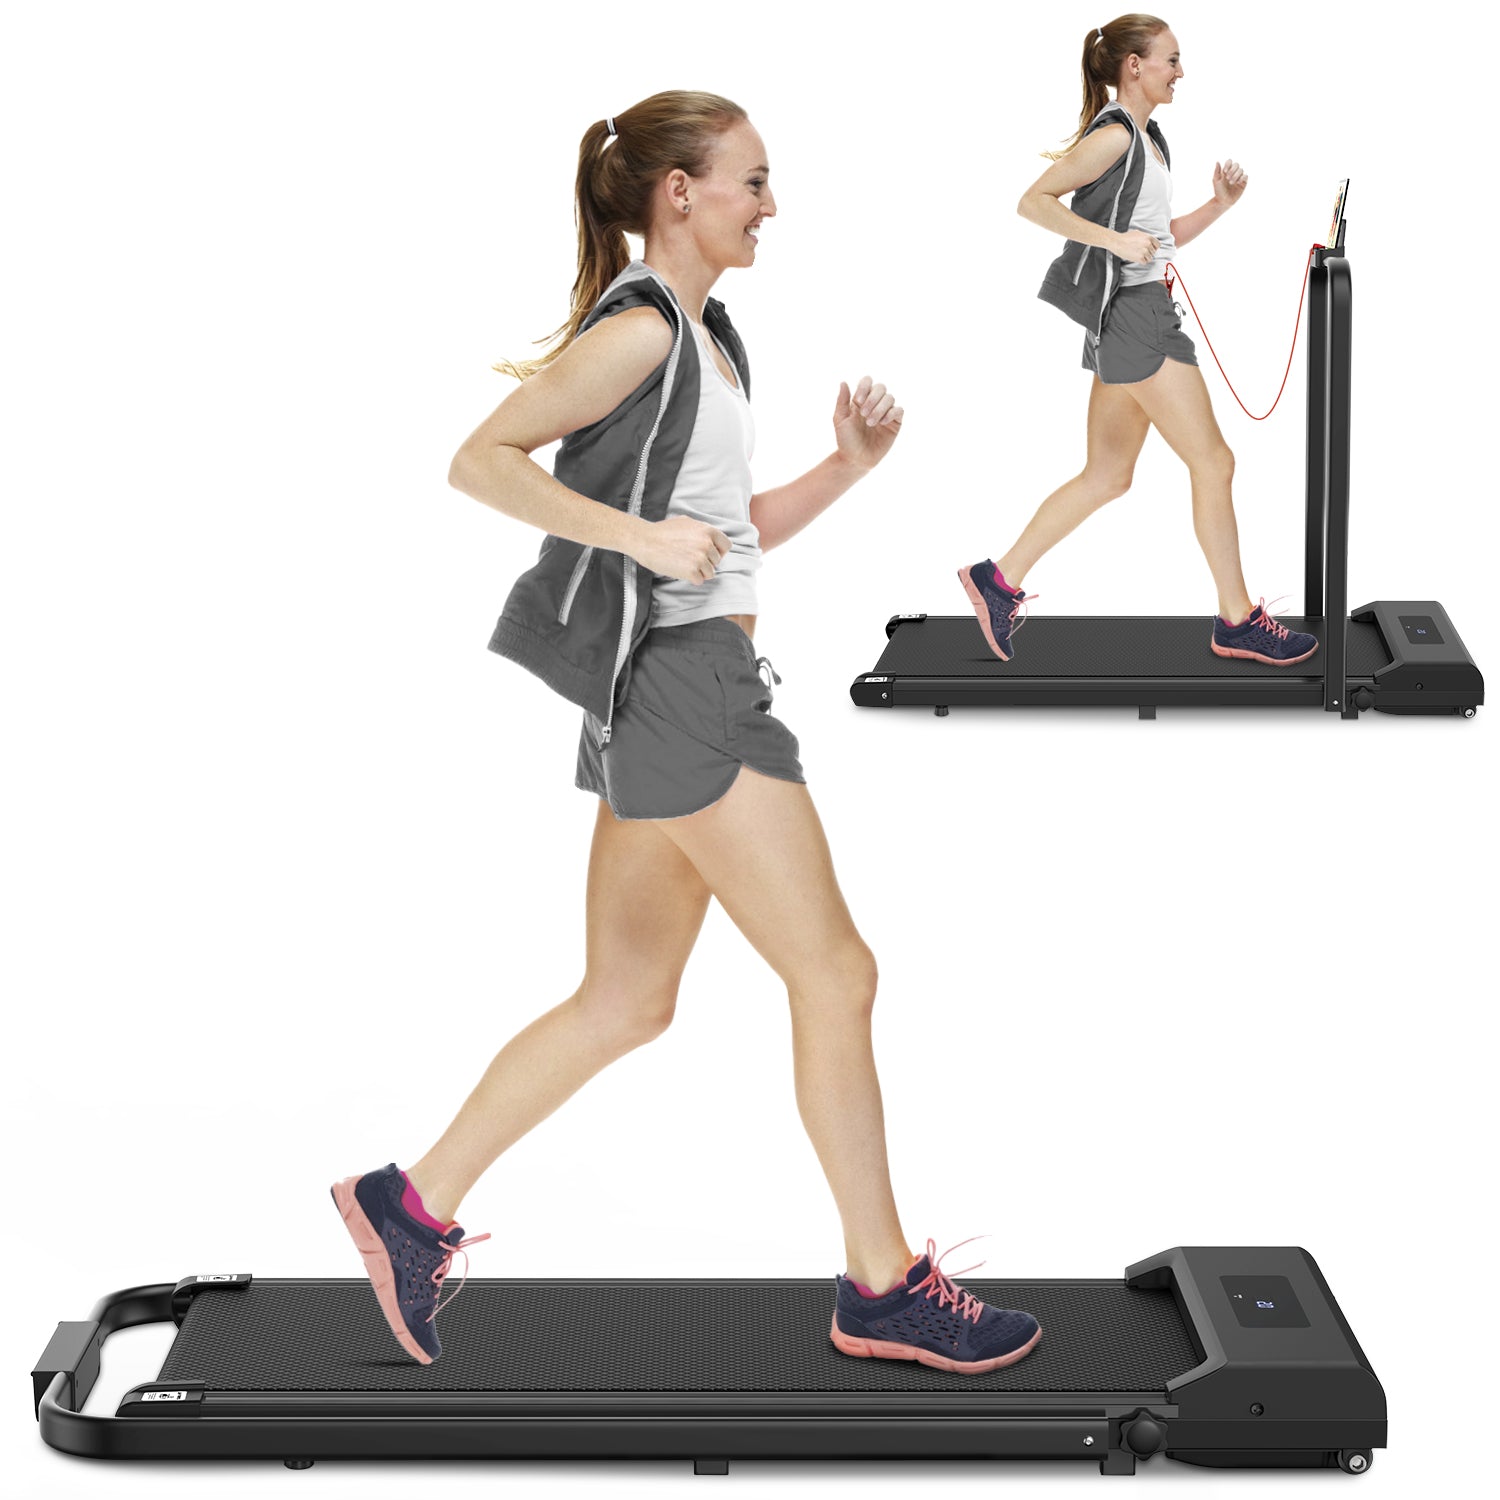 2 in 1 Folding Treadmill, Under Desk Treadmill, 1-10KM/H Walking